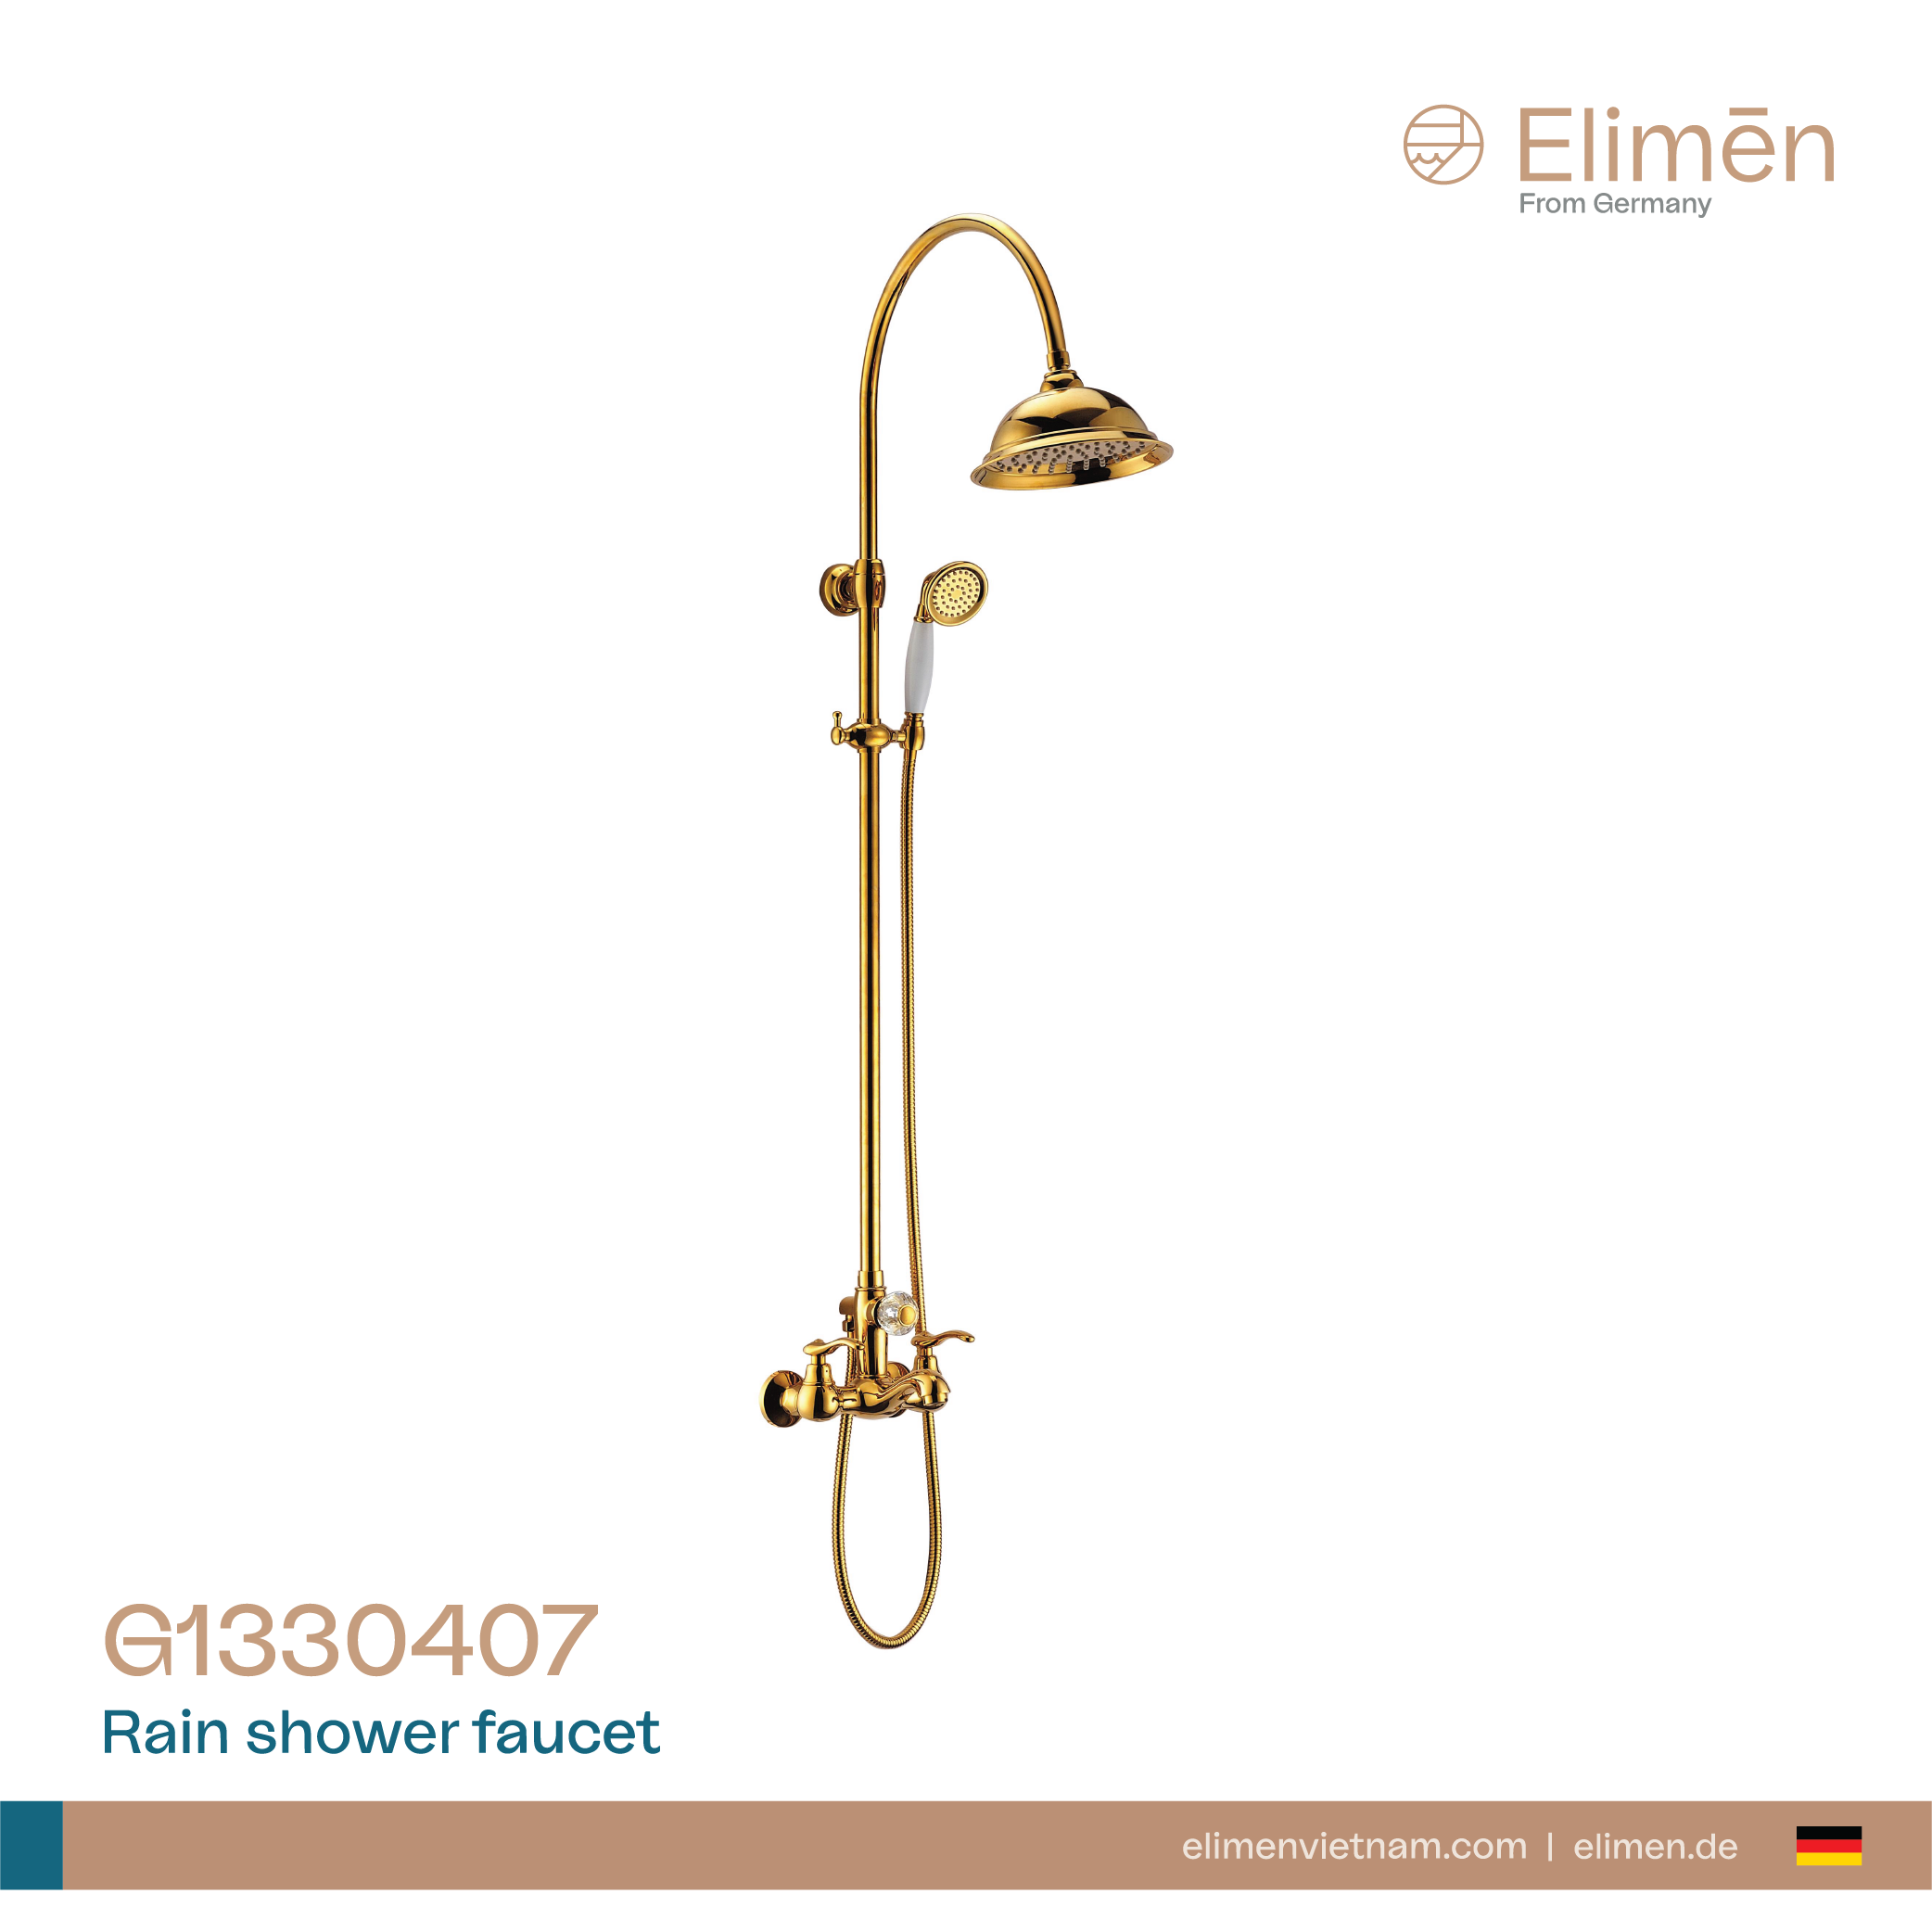 Elimen shower tree - Code G1330407